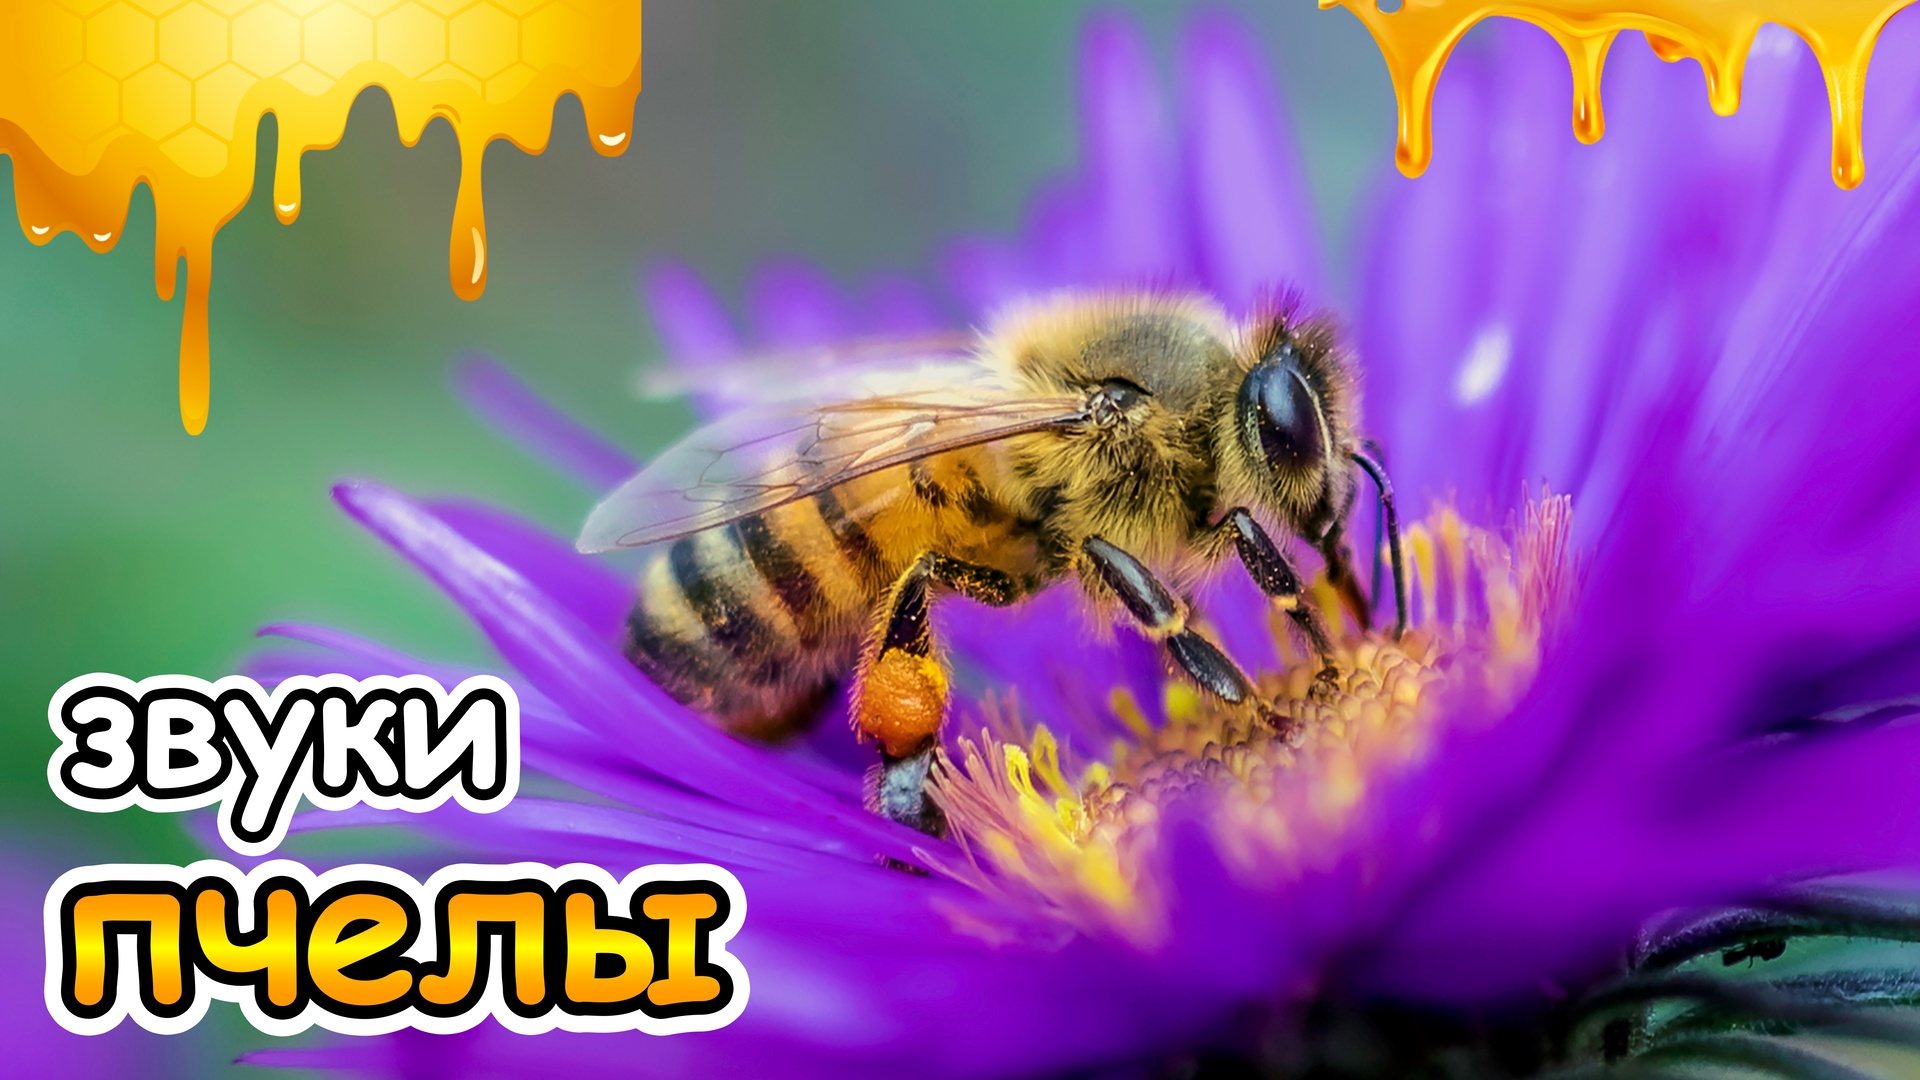 Звук пчелы слушать. Звук пчелы. Пчелиные звуки. Новый вид пчел. Пчела жужжит звук.